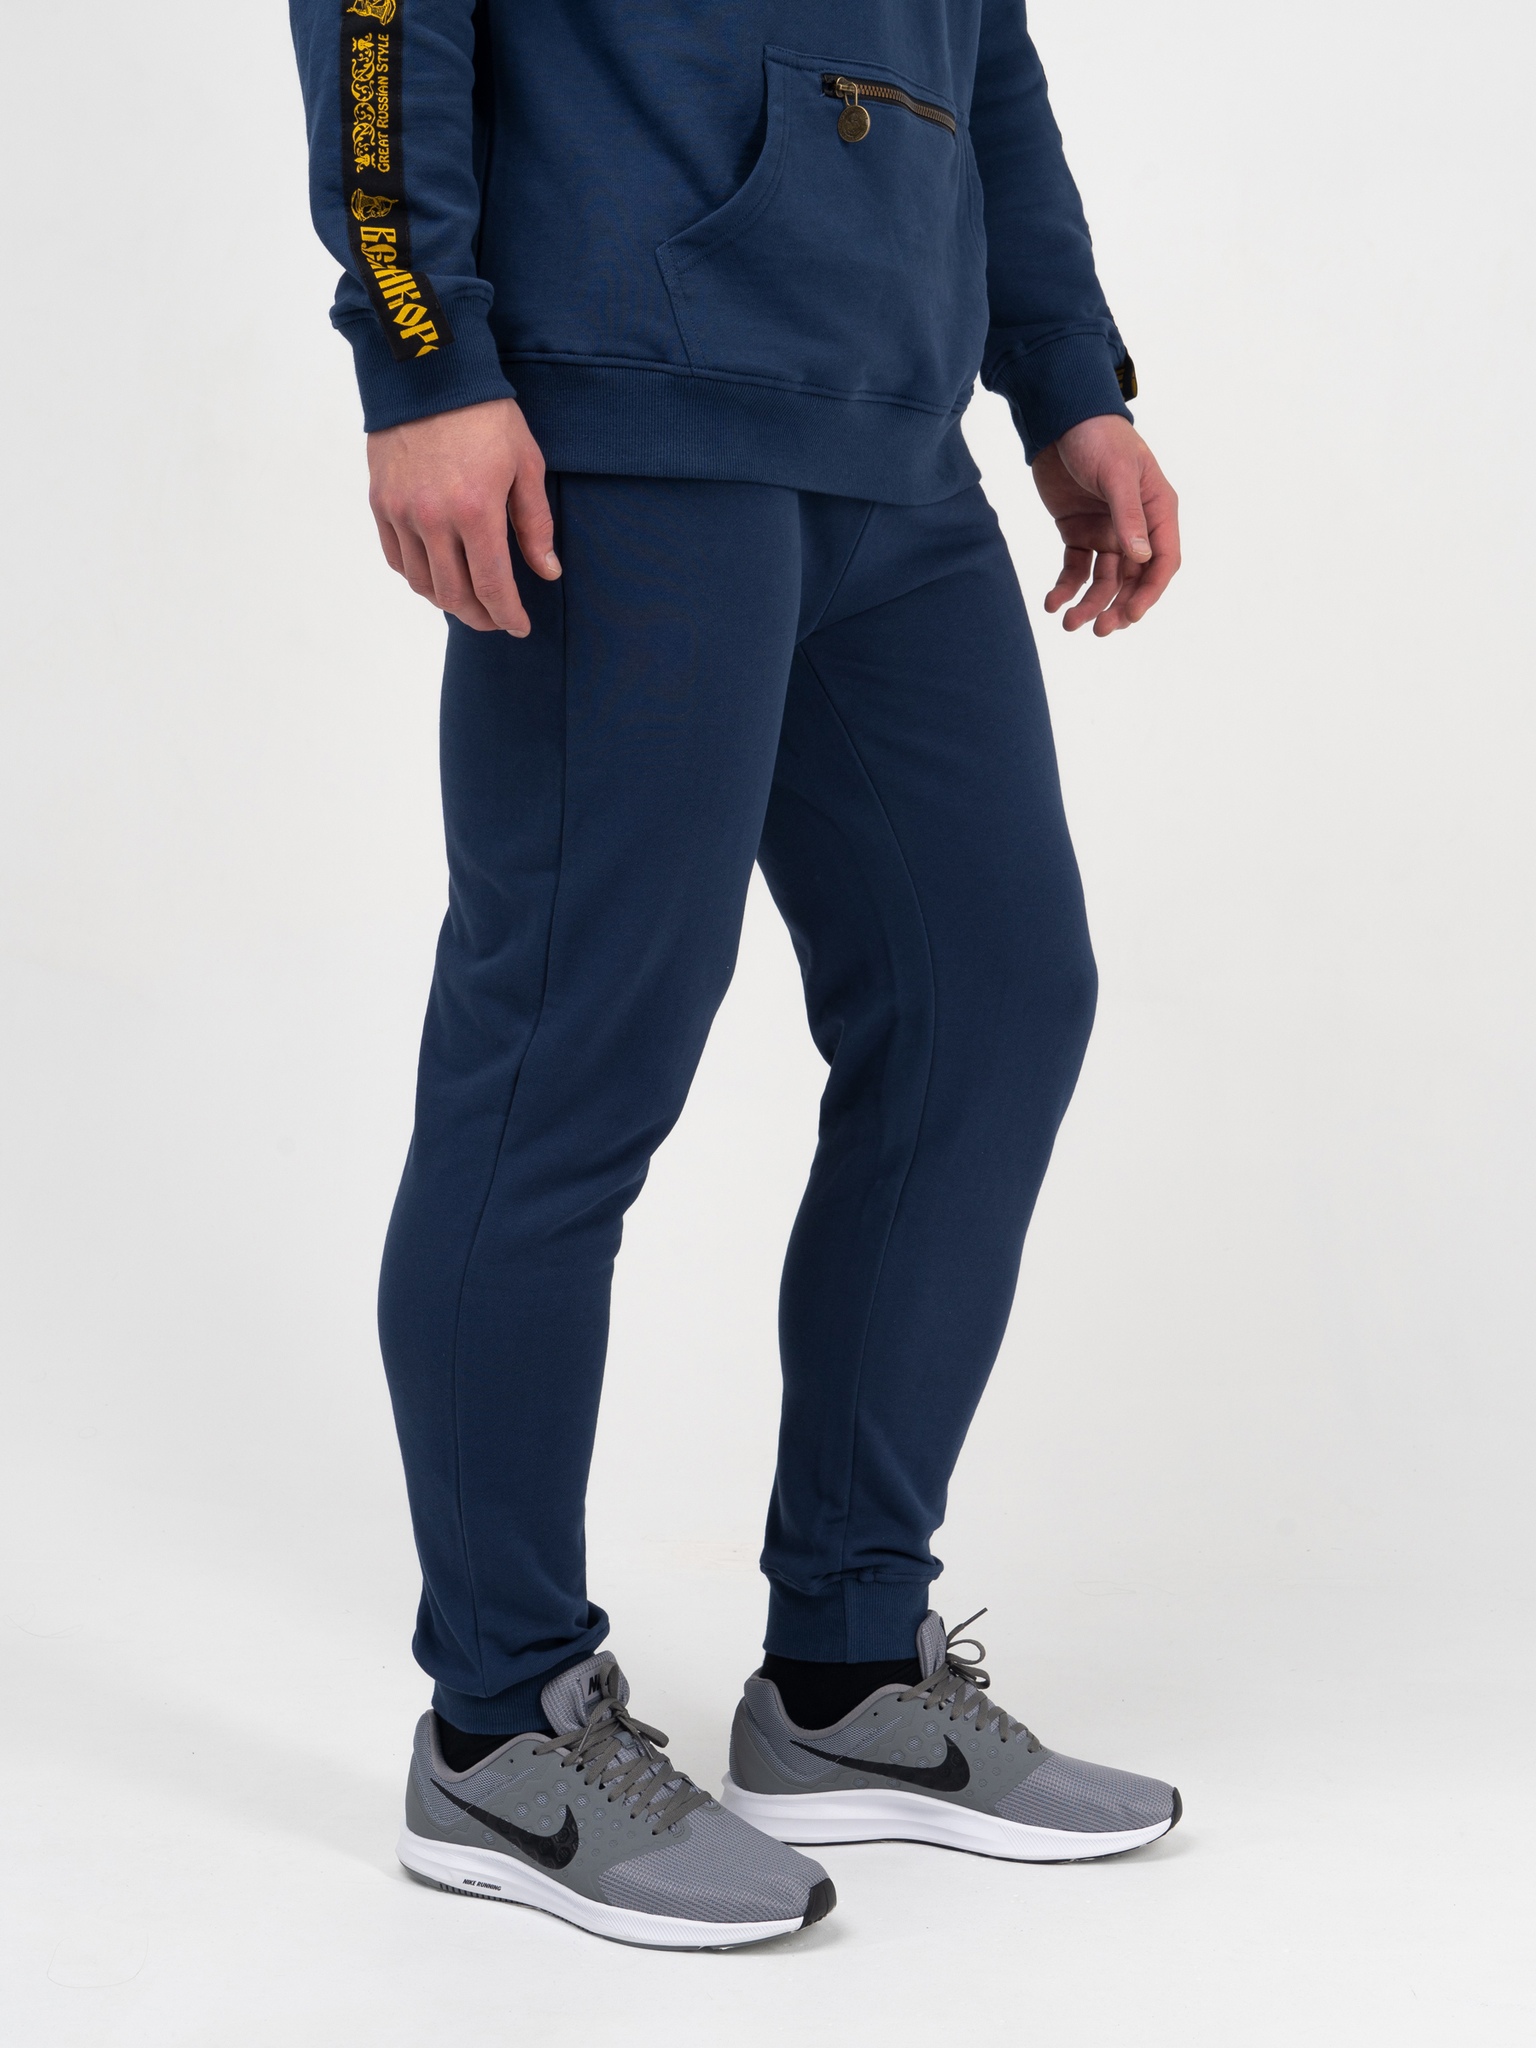 фото Спортивные брюки мужские великоросс чемпион синие 48 ru